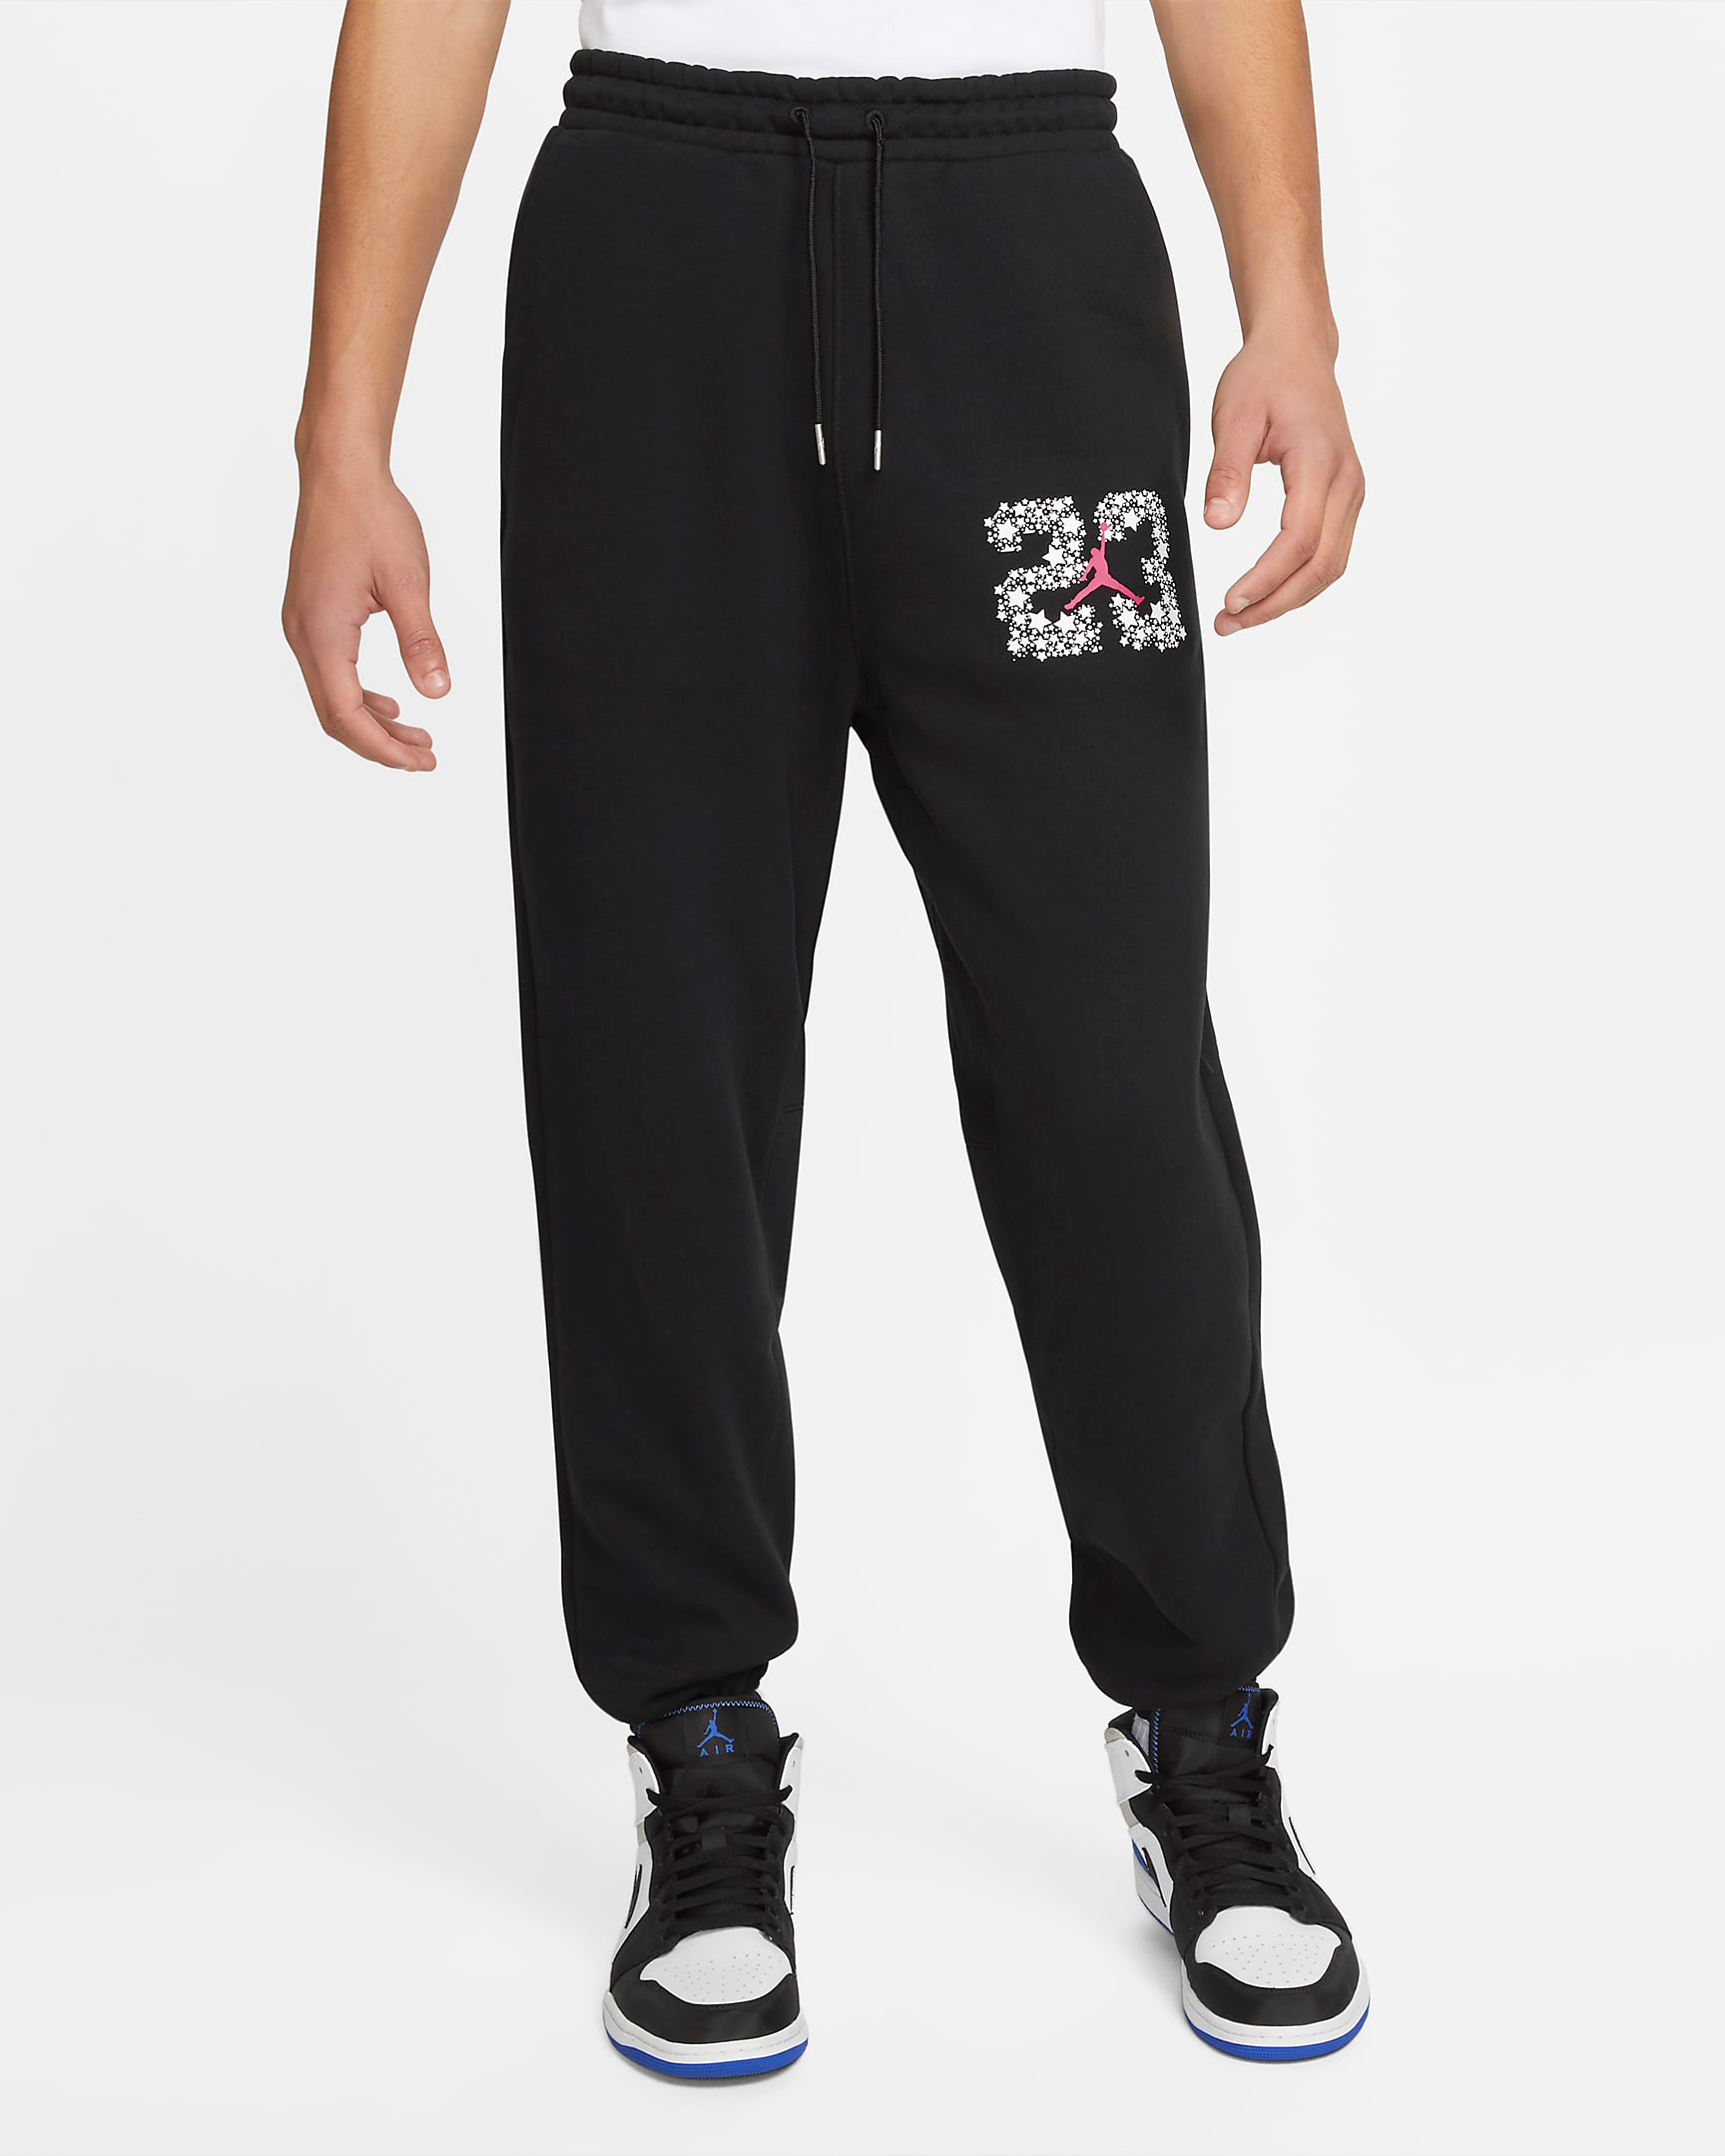 jordan-sport-dna-fleece-pants-black-white-red-1